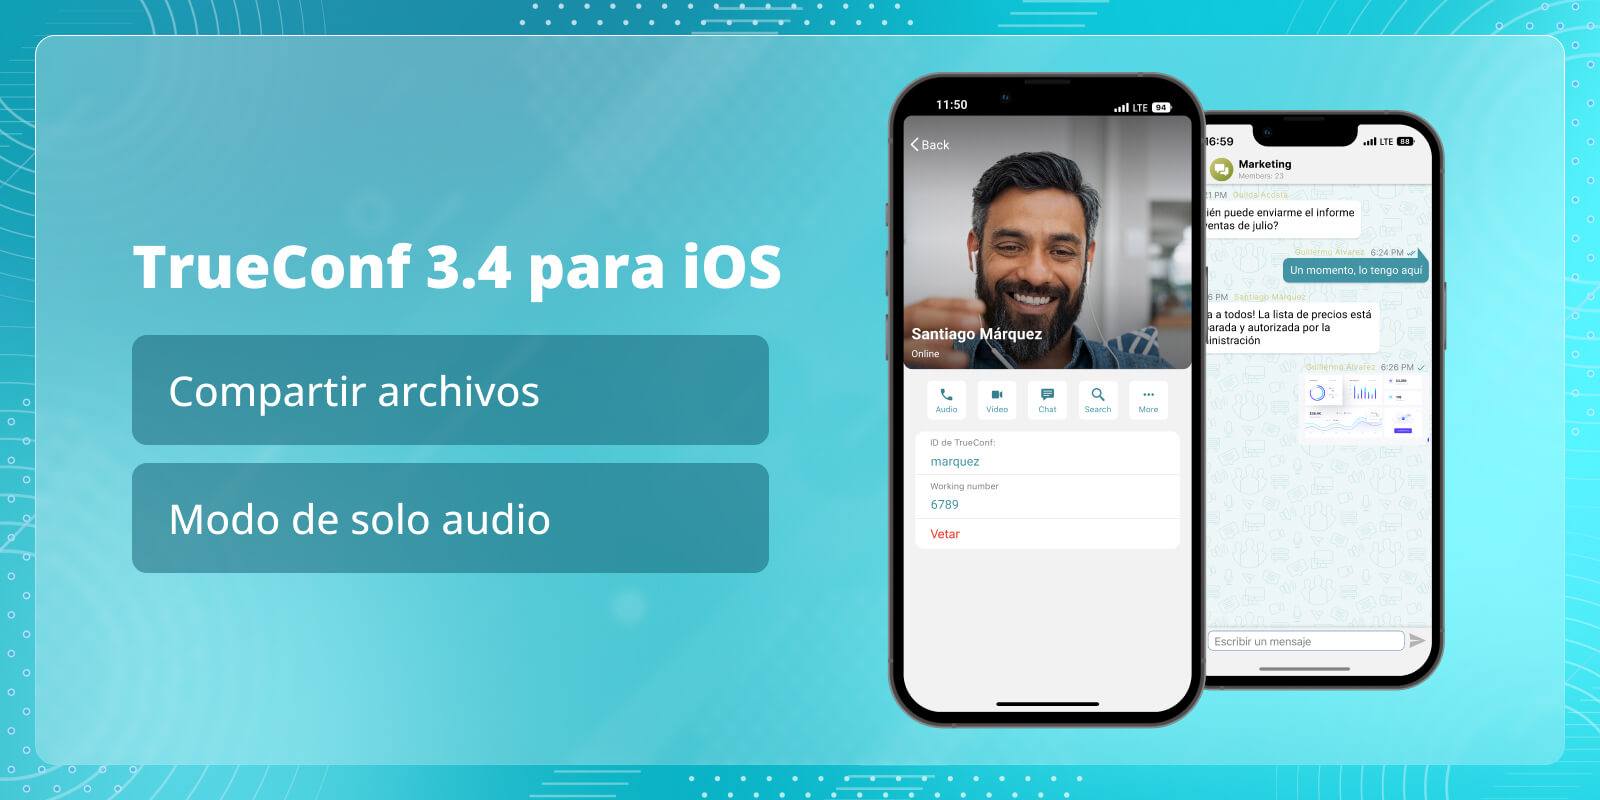 TrueConf 3.4 para iOS: Compartir archivos y modo de solo audio 2